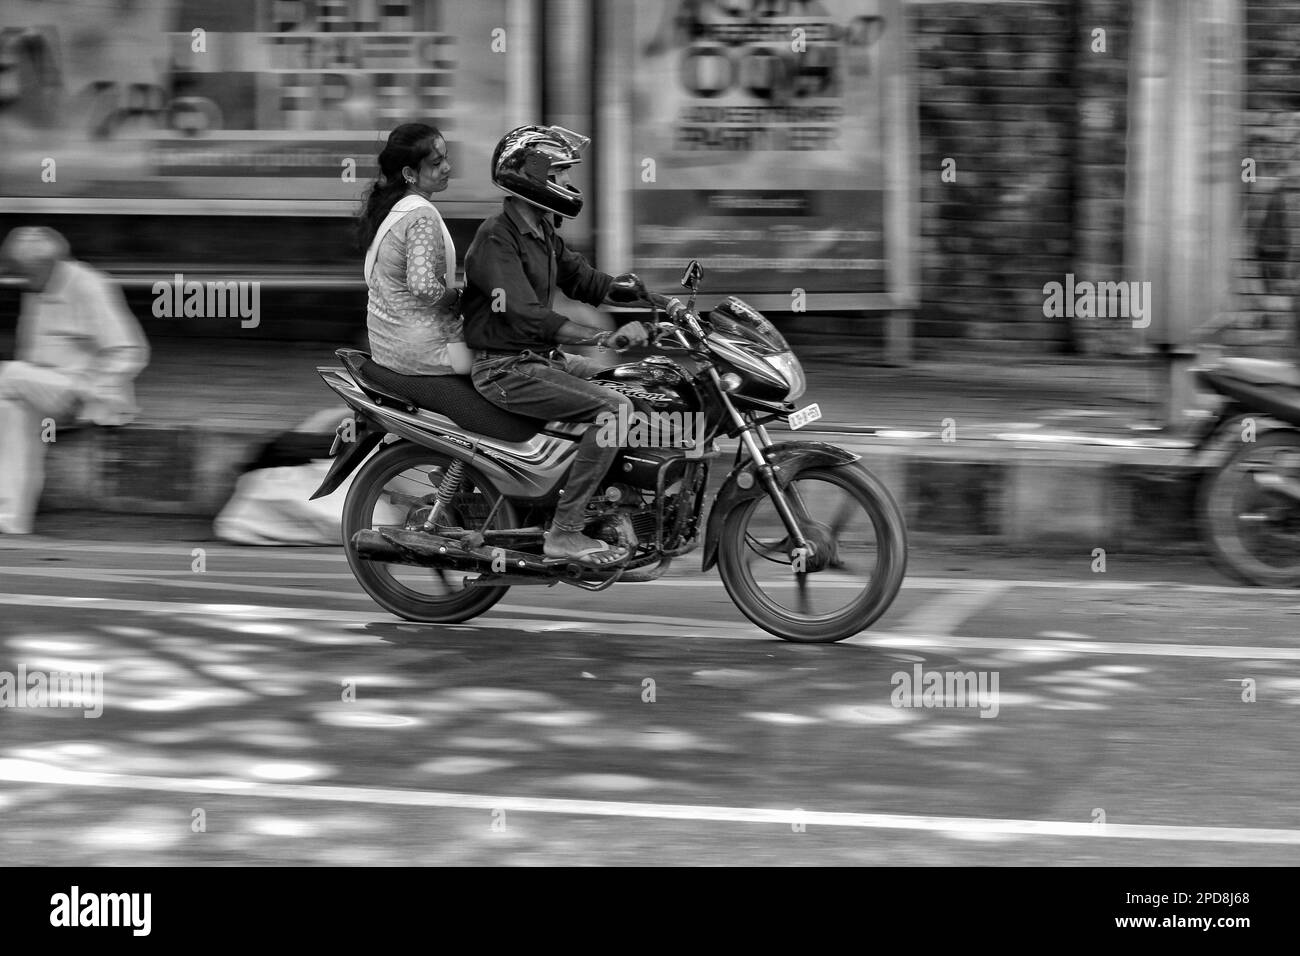 Deux personnes sont vues voyager sur des motos dans une rue de la ville, avec quelques piétons marchant sur le trottoir Banque D'Images